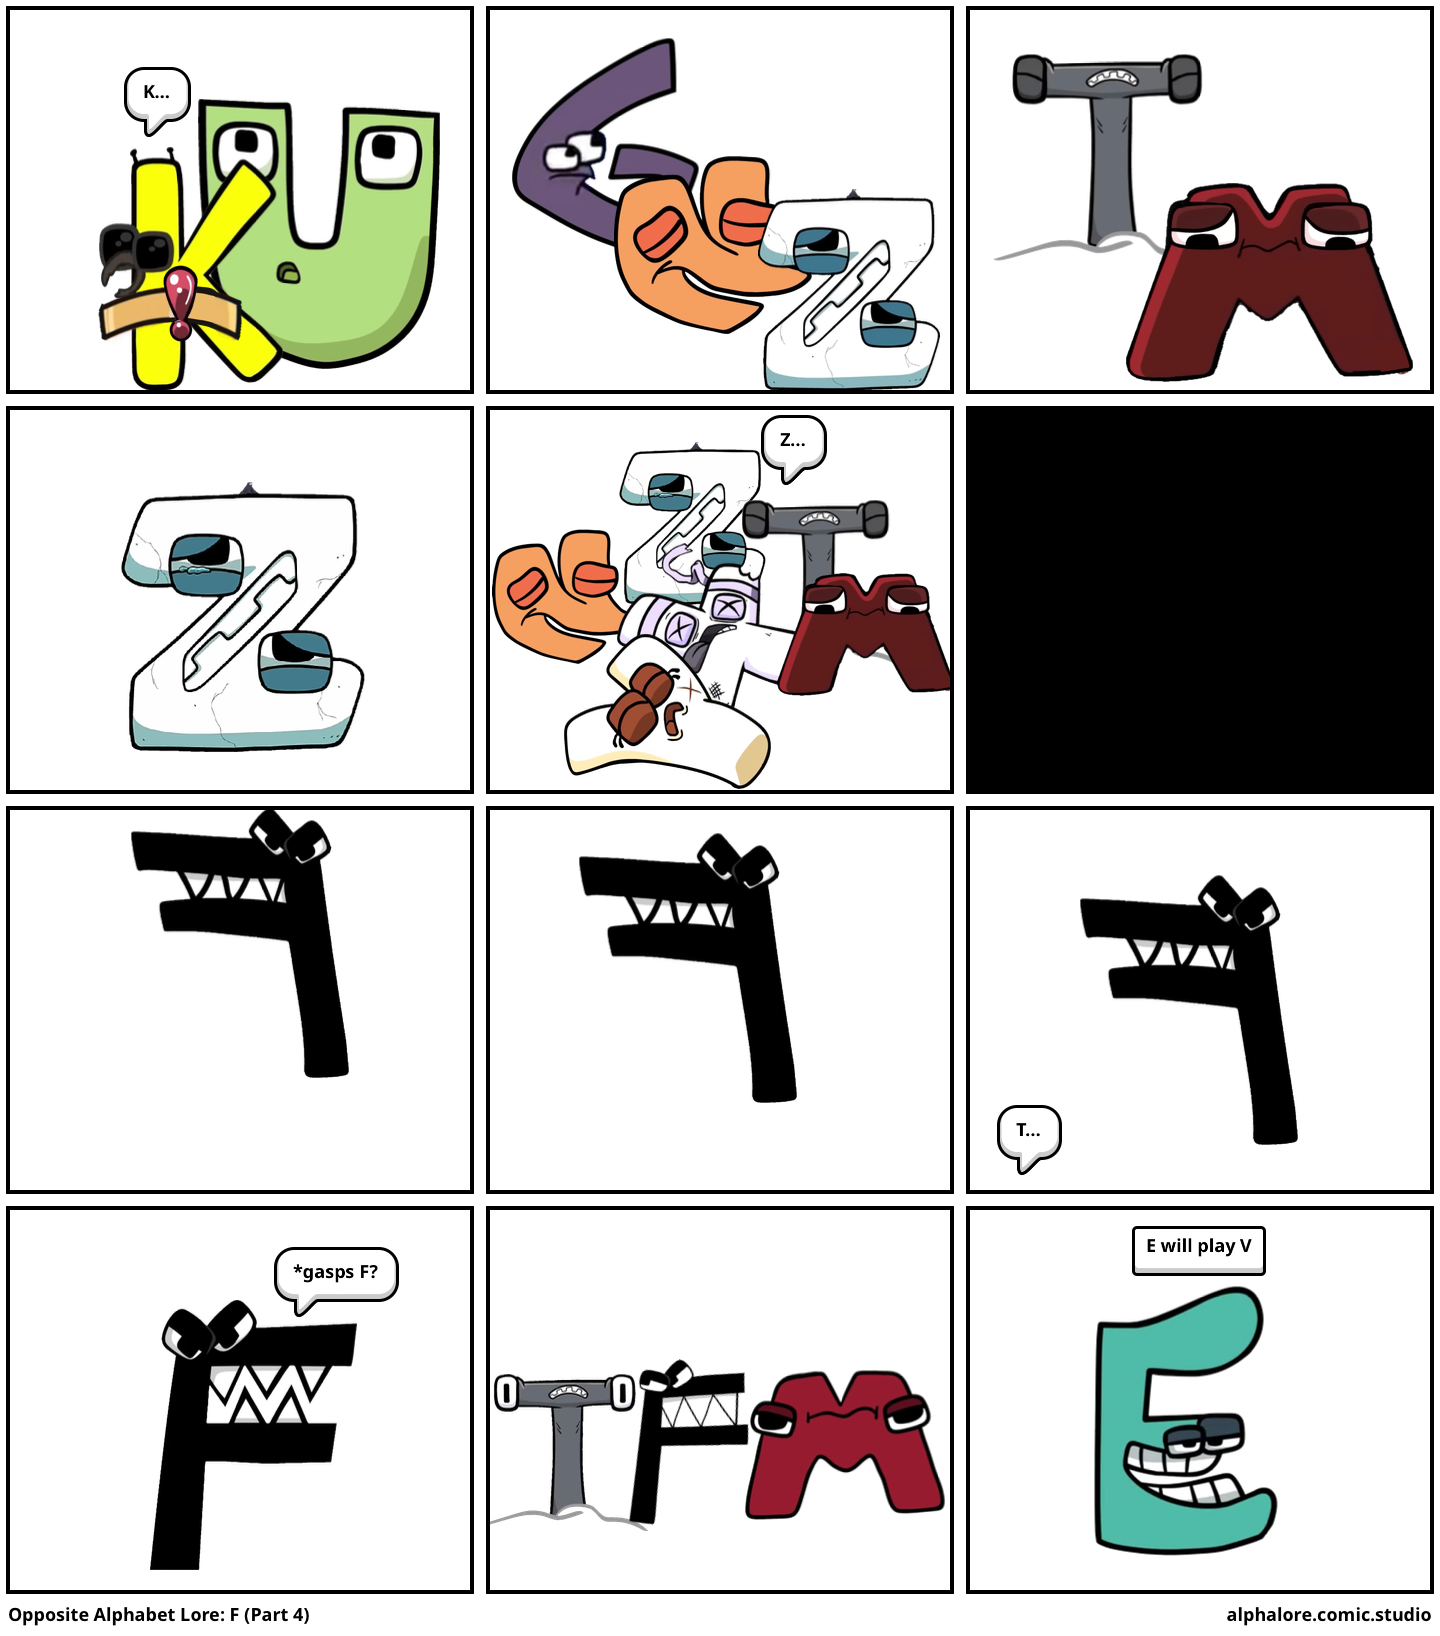 Opposite Alphabet Lore: F (Part 3) - Comic Studio